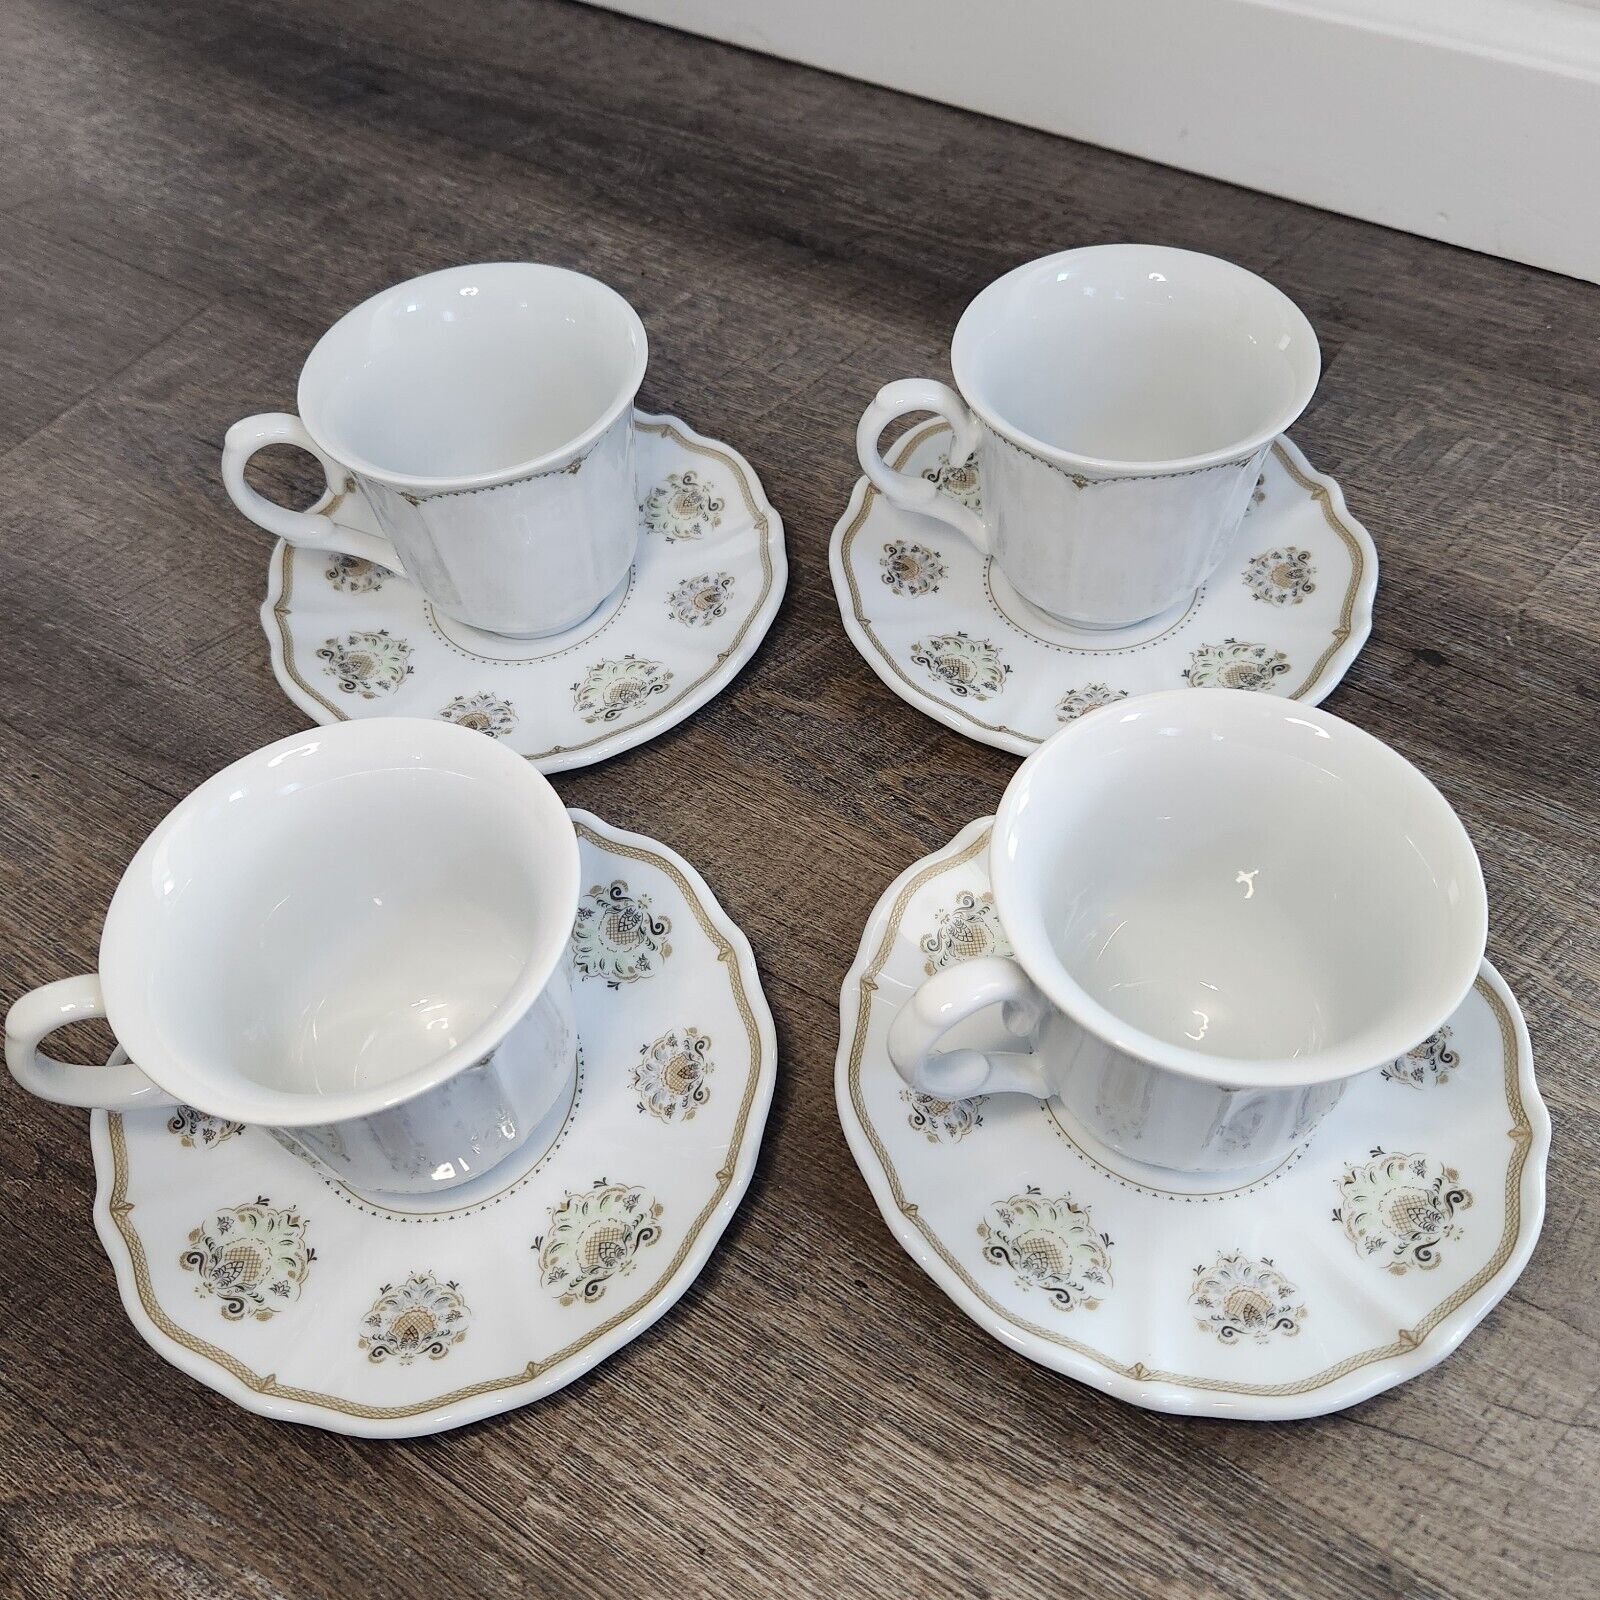 Downton Abbey World Market Tea Cup & Saucers Set Of 4 2016 Porcelain 